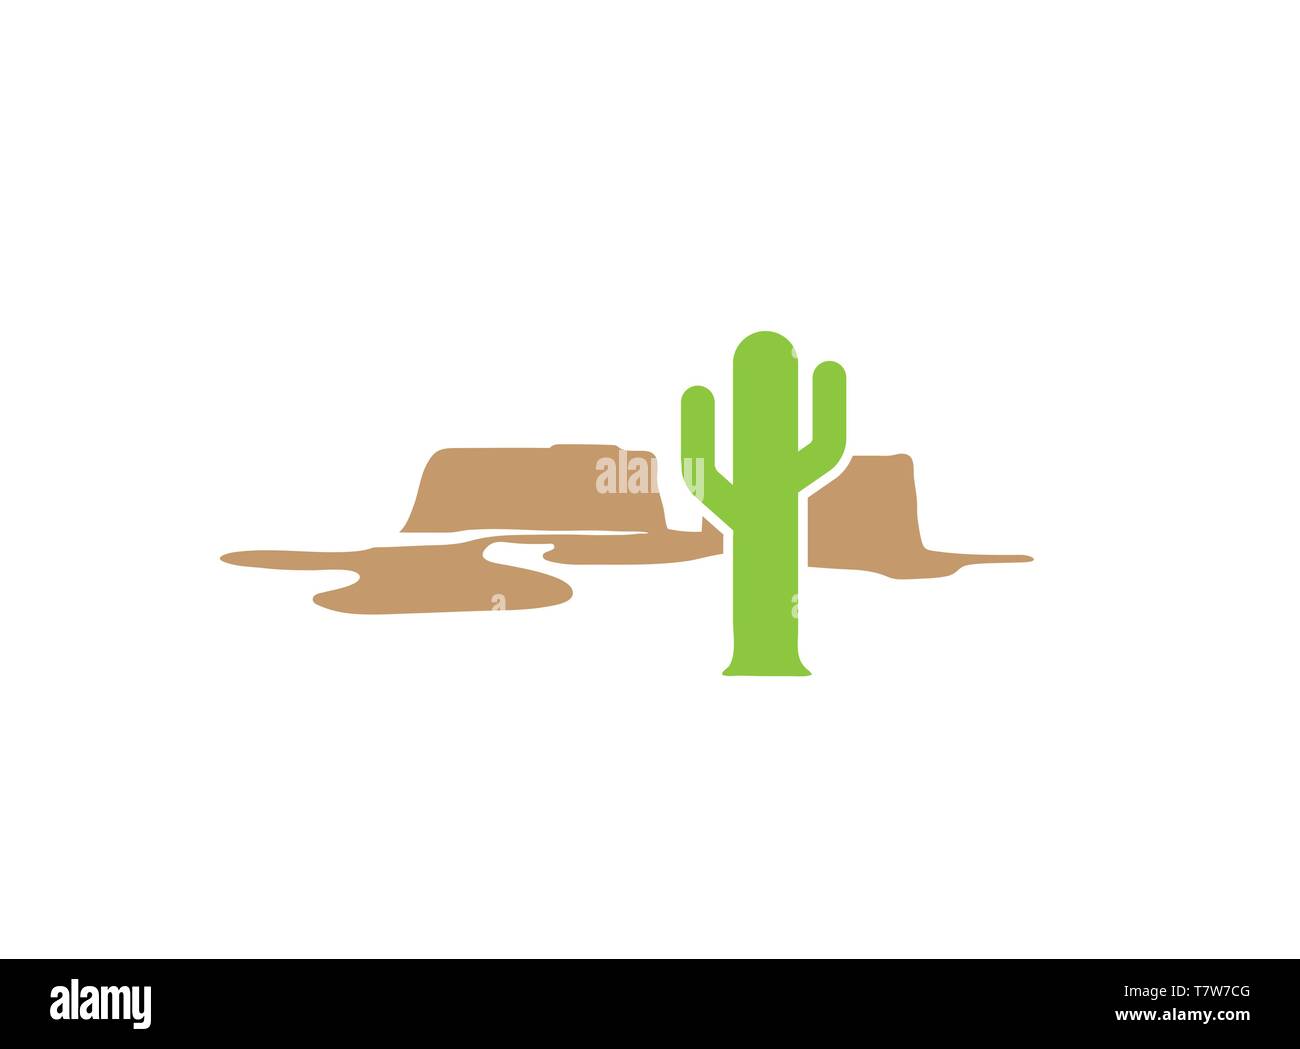 Cactus in desert and mountain logo design vector Stock Vector